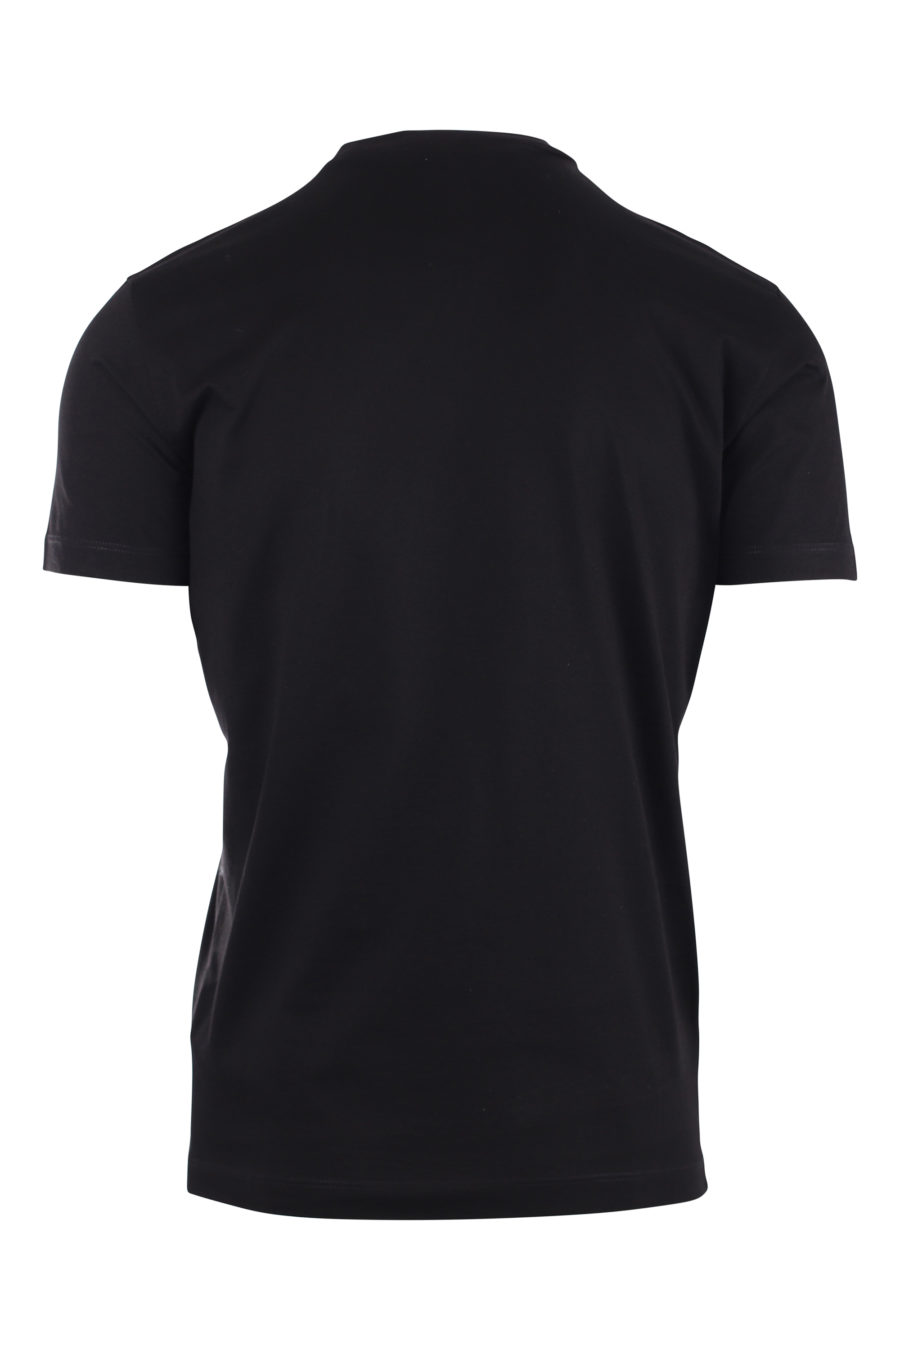 T-shirt noir avec logo de la construction - IMG 9715